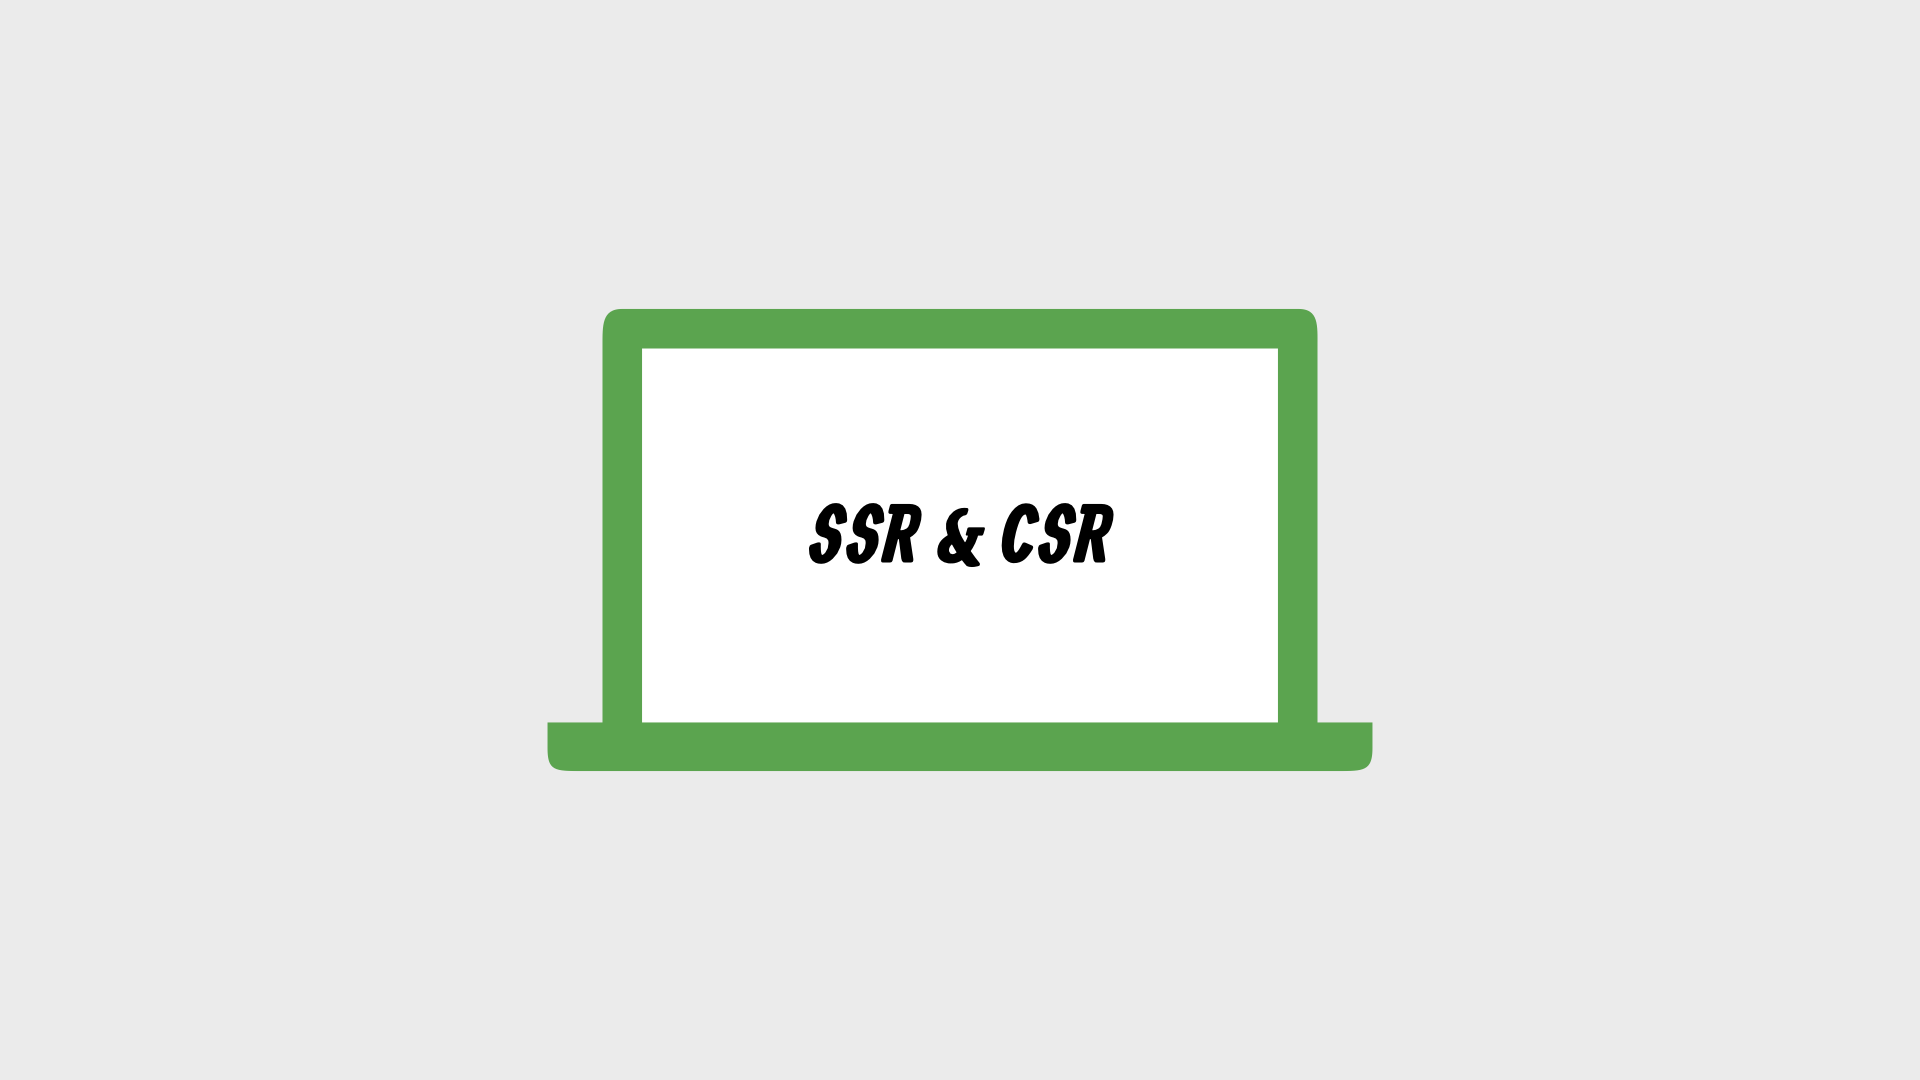 SSR & CSR